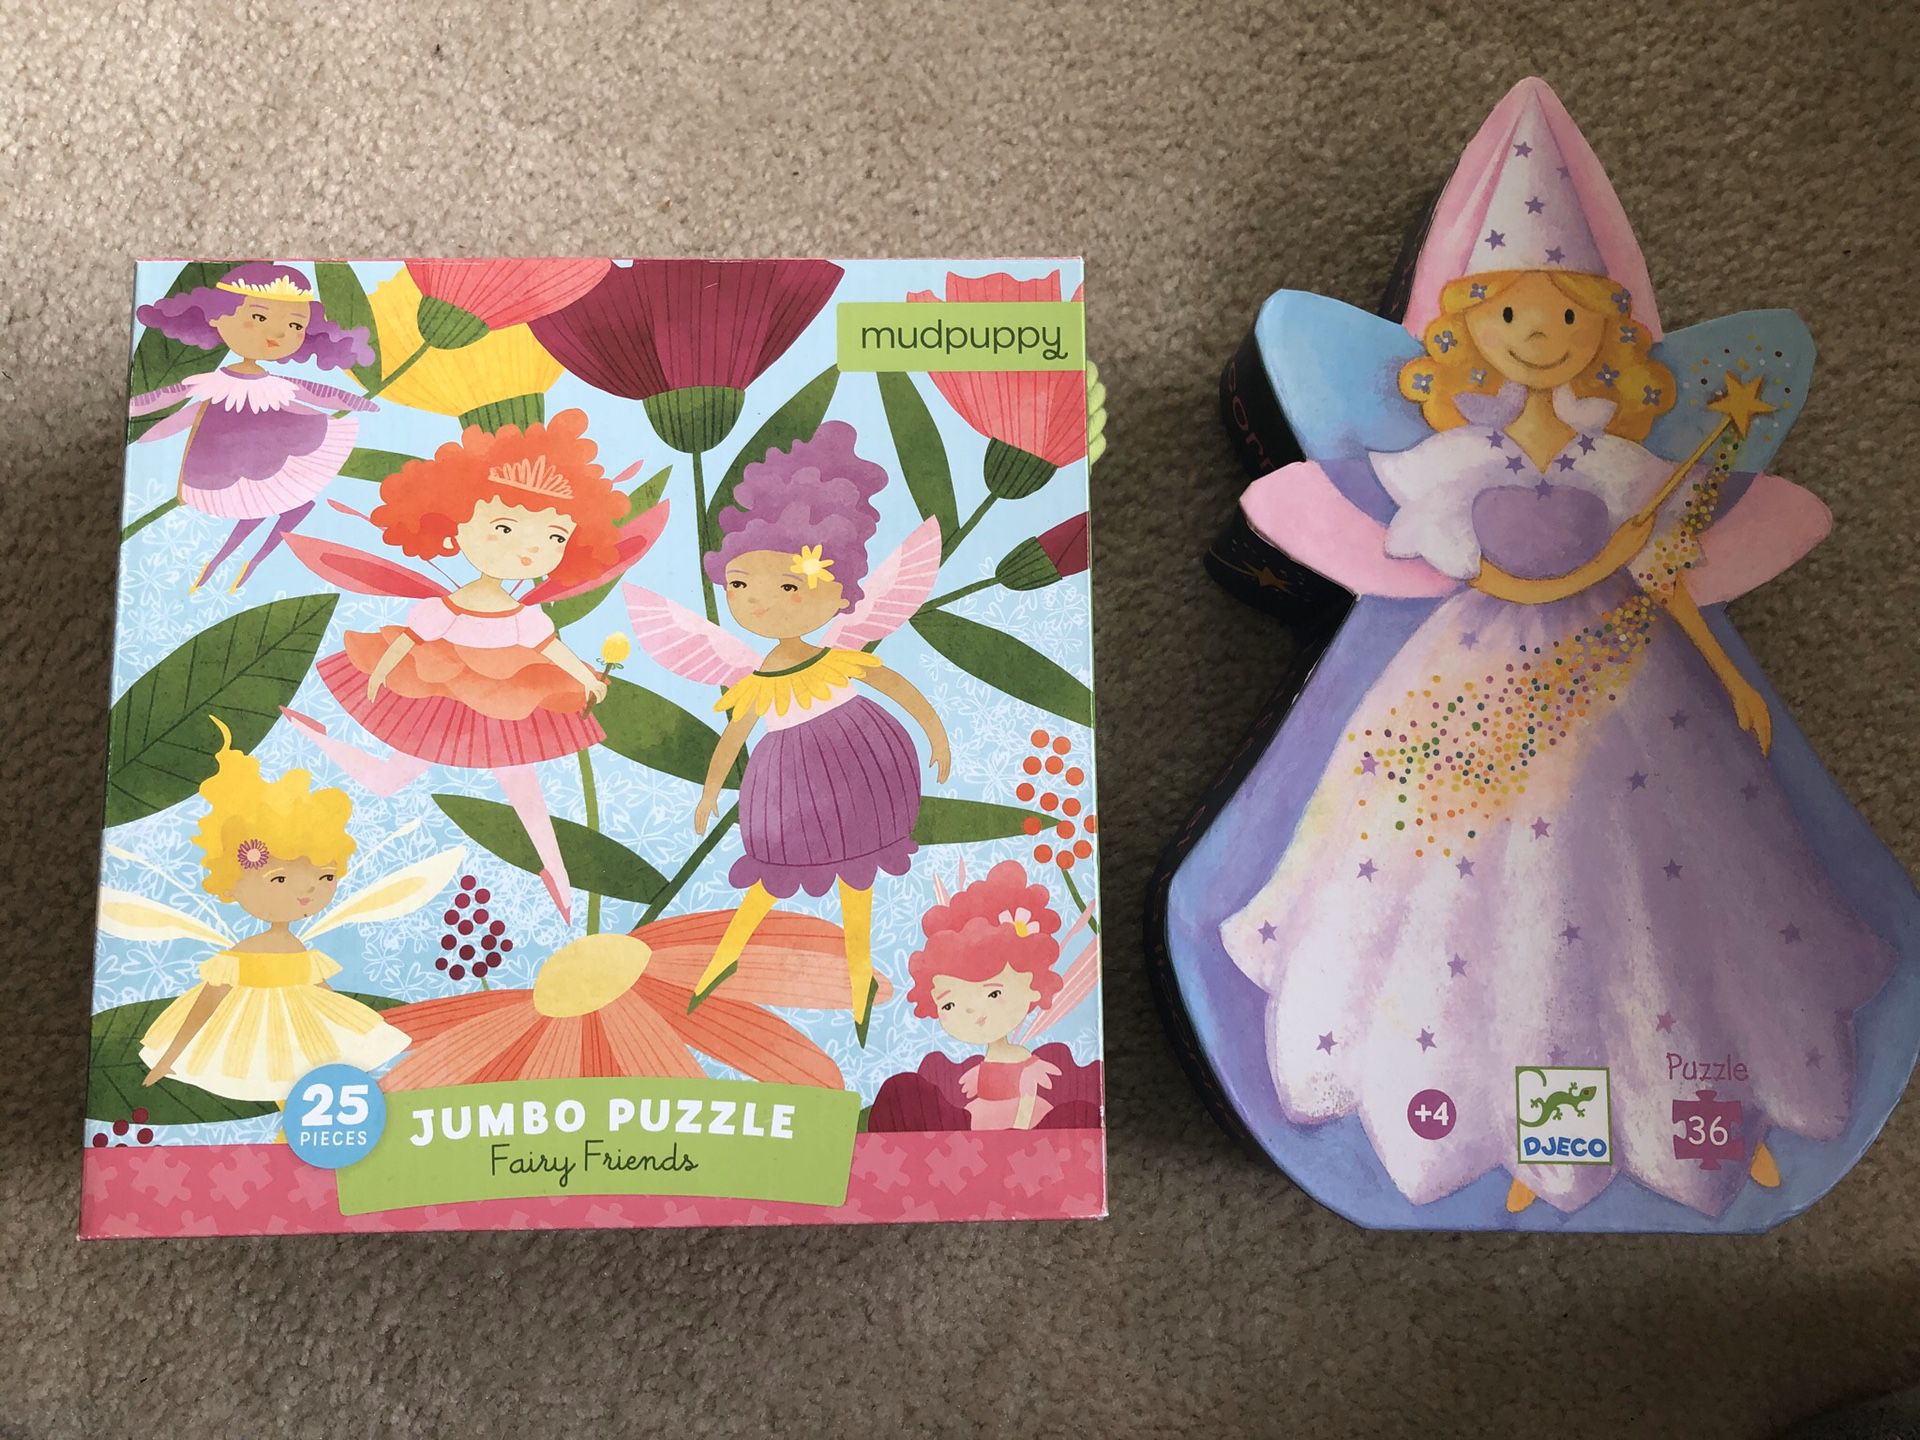 Fairy puzzles